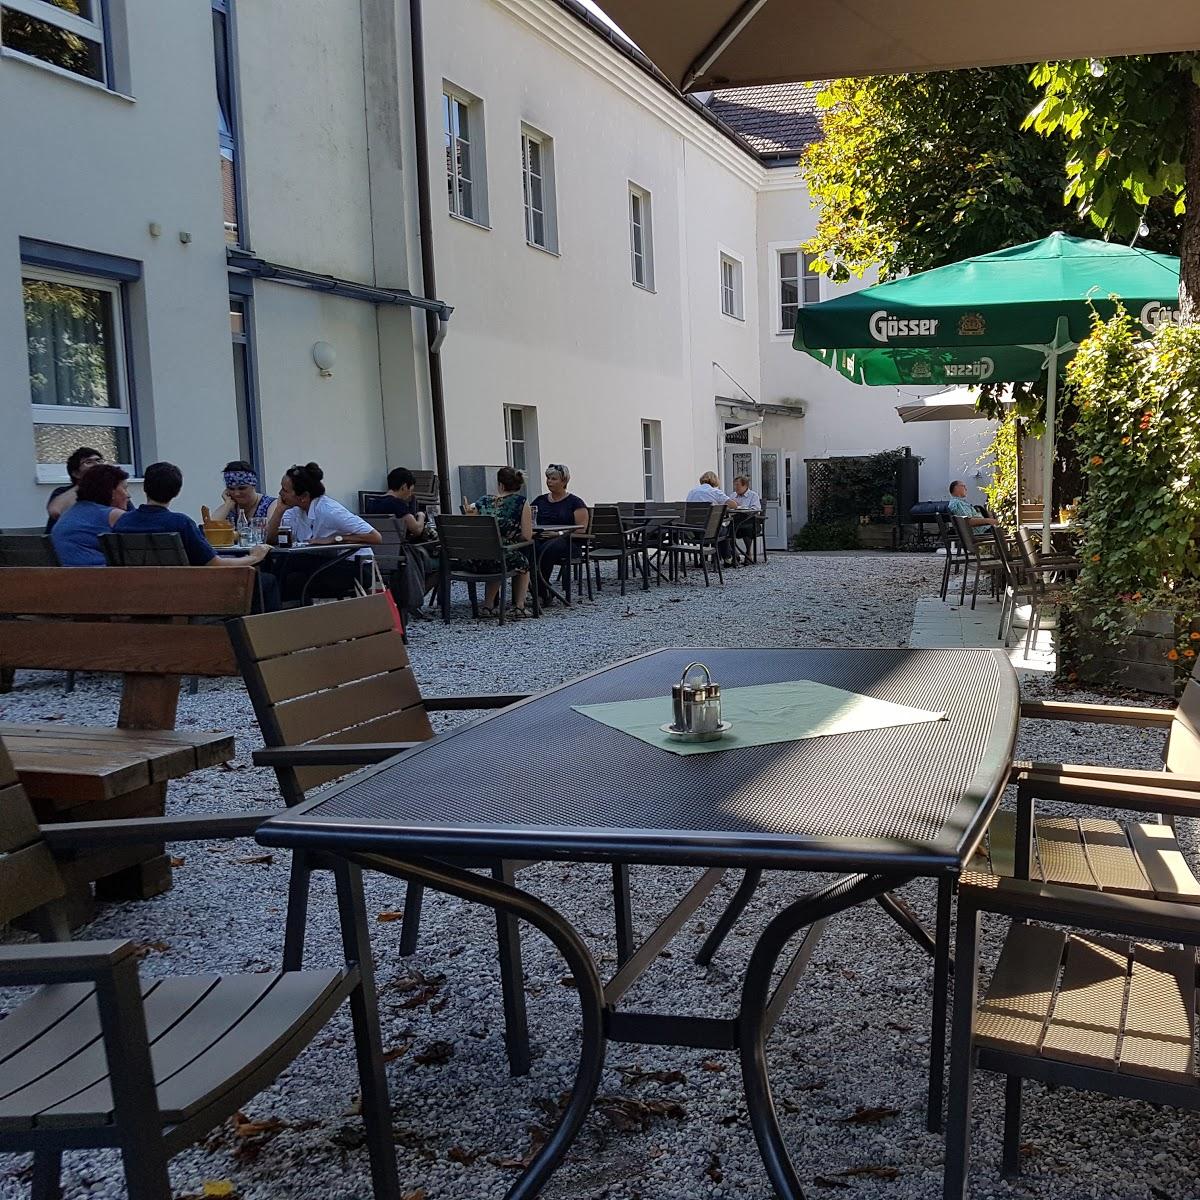 Restaurant "Zum Schwarzen Elefanten" in Scheibbs